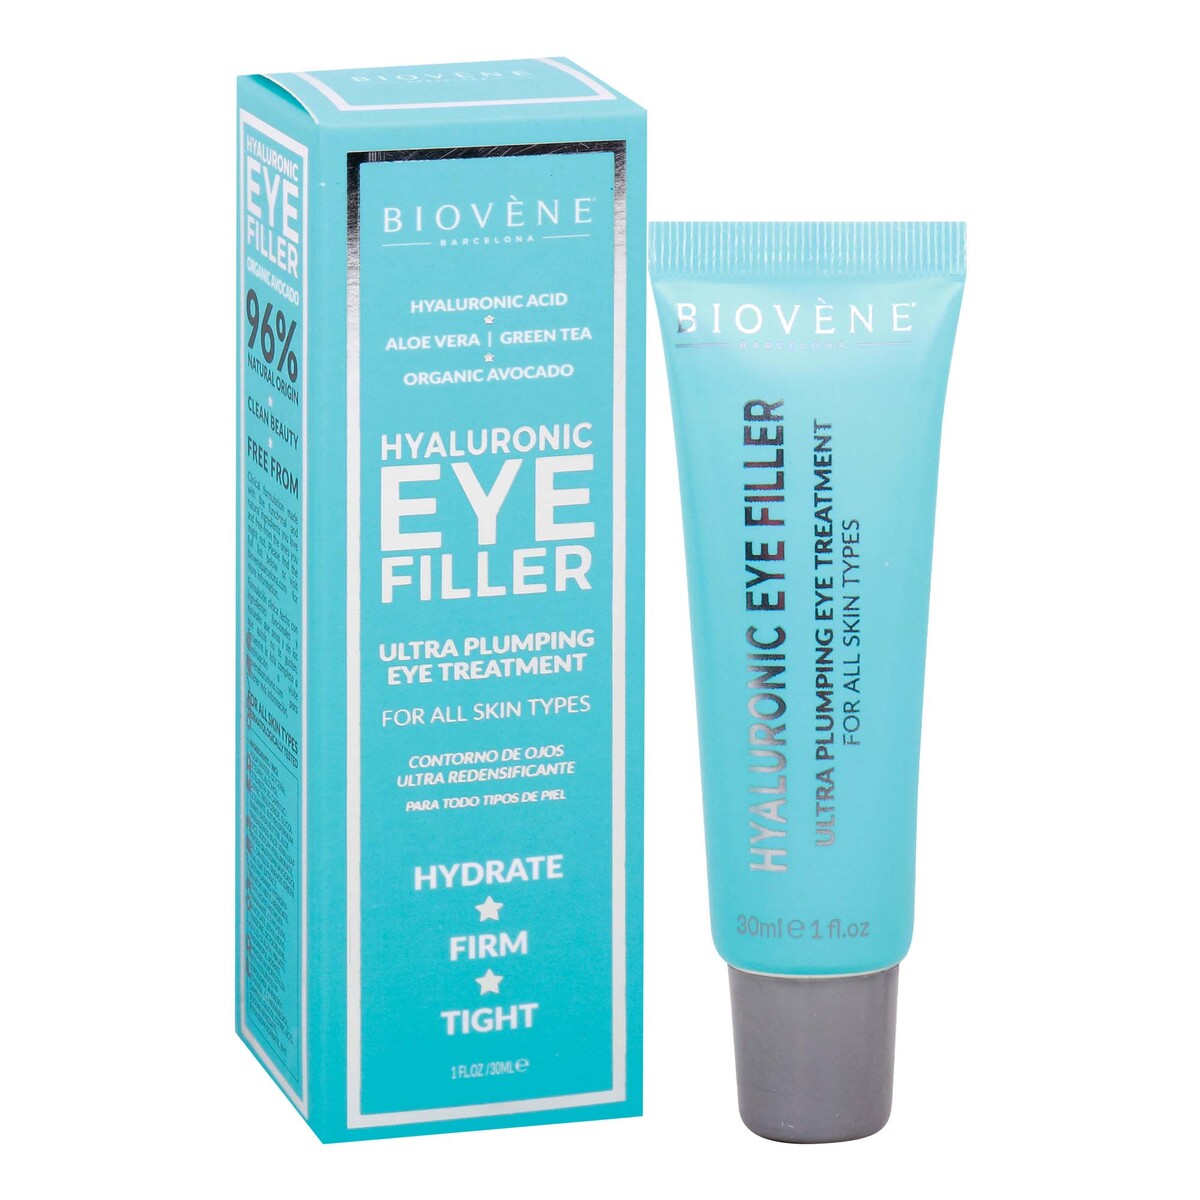 Biovene Hyaluronic Eye Filler Ultra Plumping Eye Treatment 30 ml